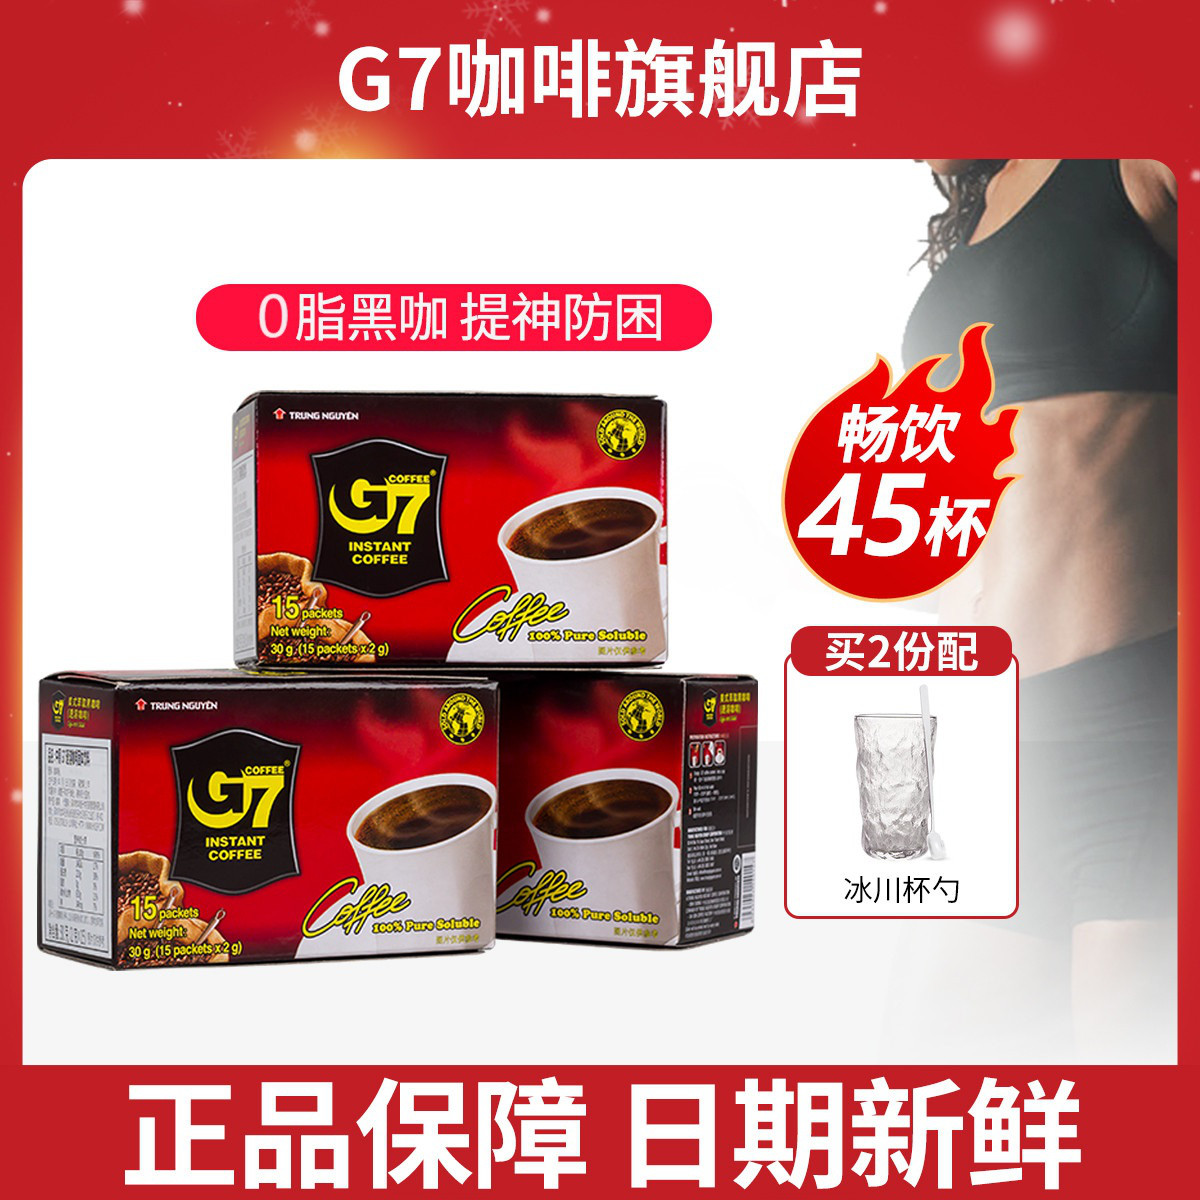 G7 COFFEE 中原咖啡 G7 纯速溶咖啡 30g*3盒